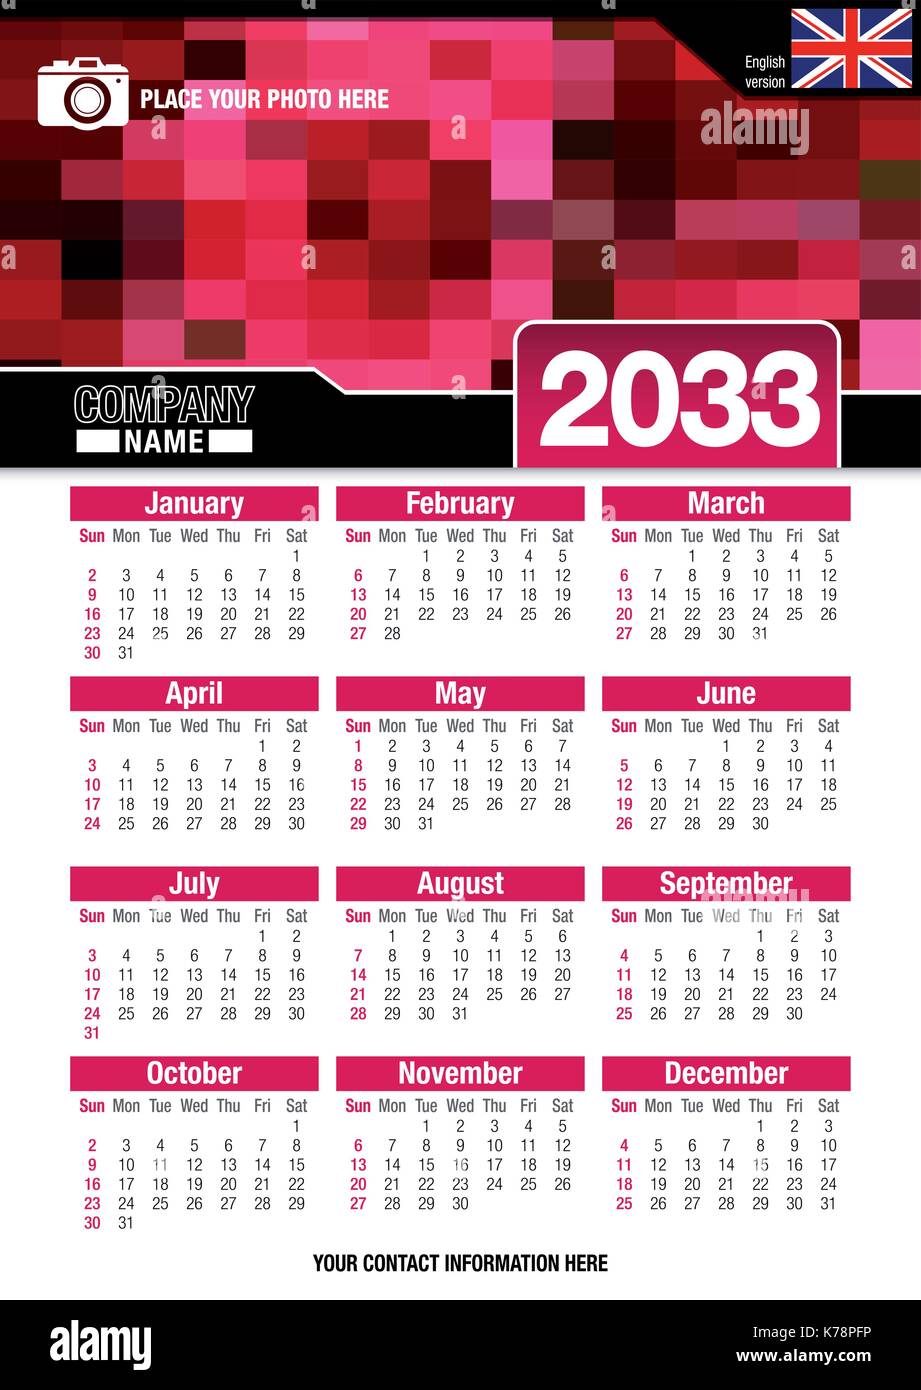 Utile calendario da parete 2033 con design di colori rosso mosaico. Formato A4 verticale. Dimensioni: 210mm x 297mm. Versione Inglese - immagine vettoriale Illustrazione Vettoriale